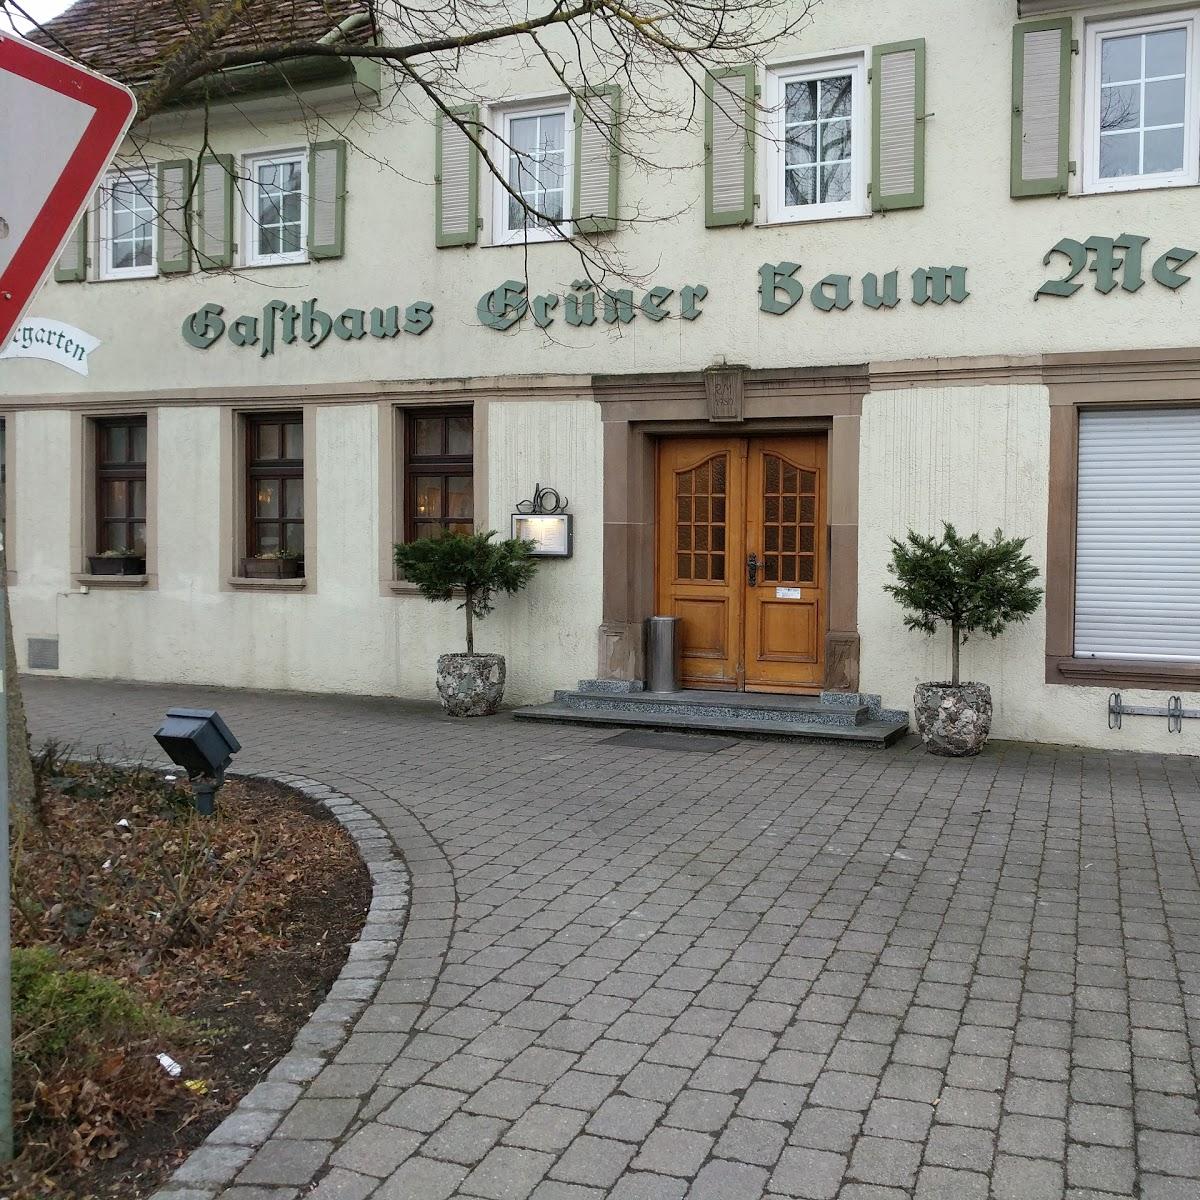 Restaurant "Gasthaus Metzgerei Biergarten Grüner Baum" in Brackenheim